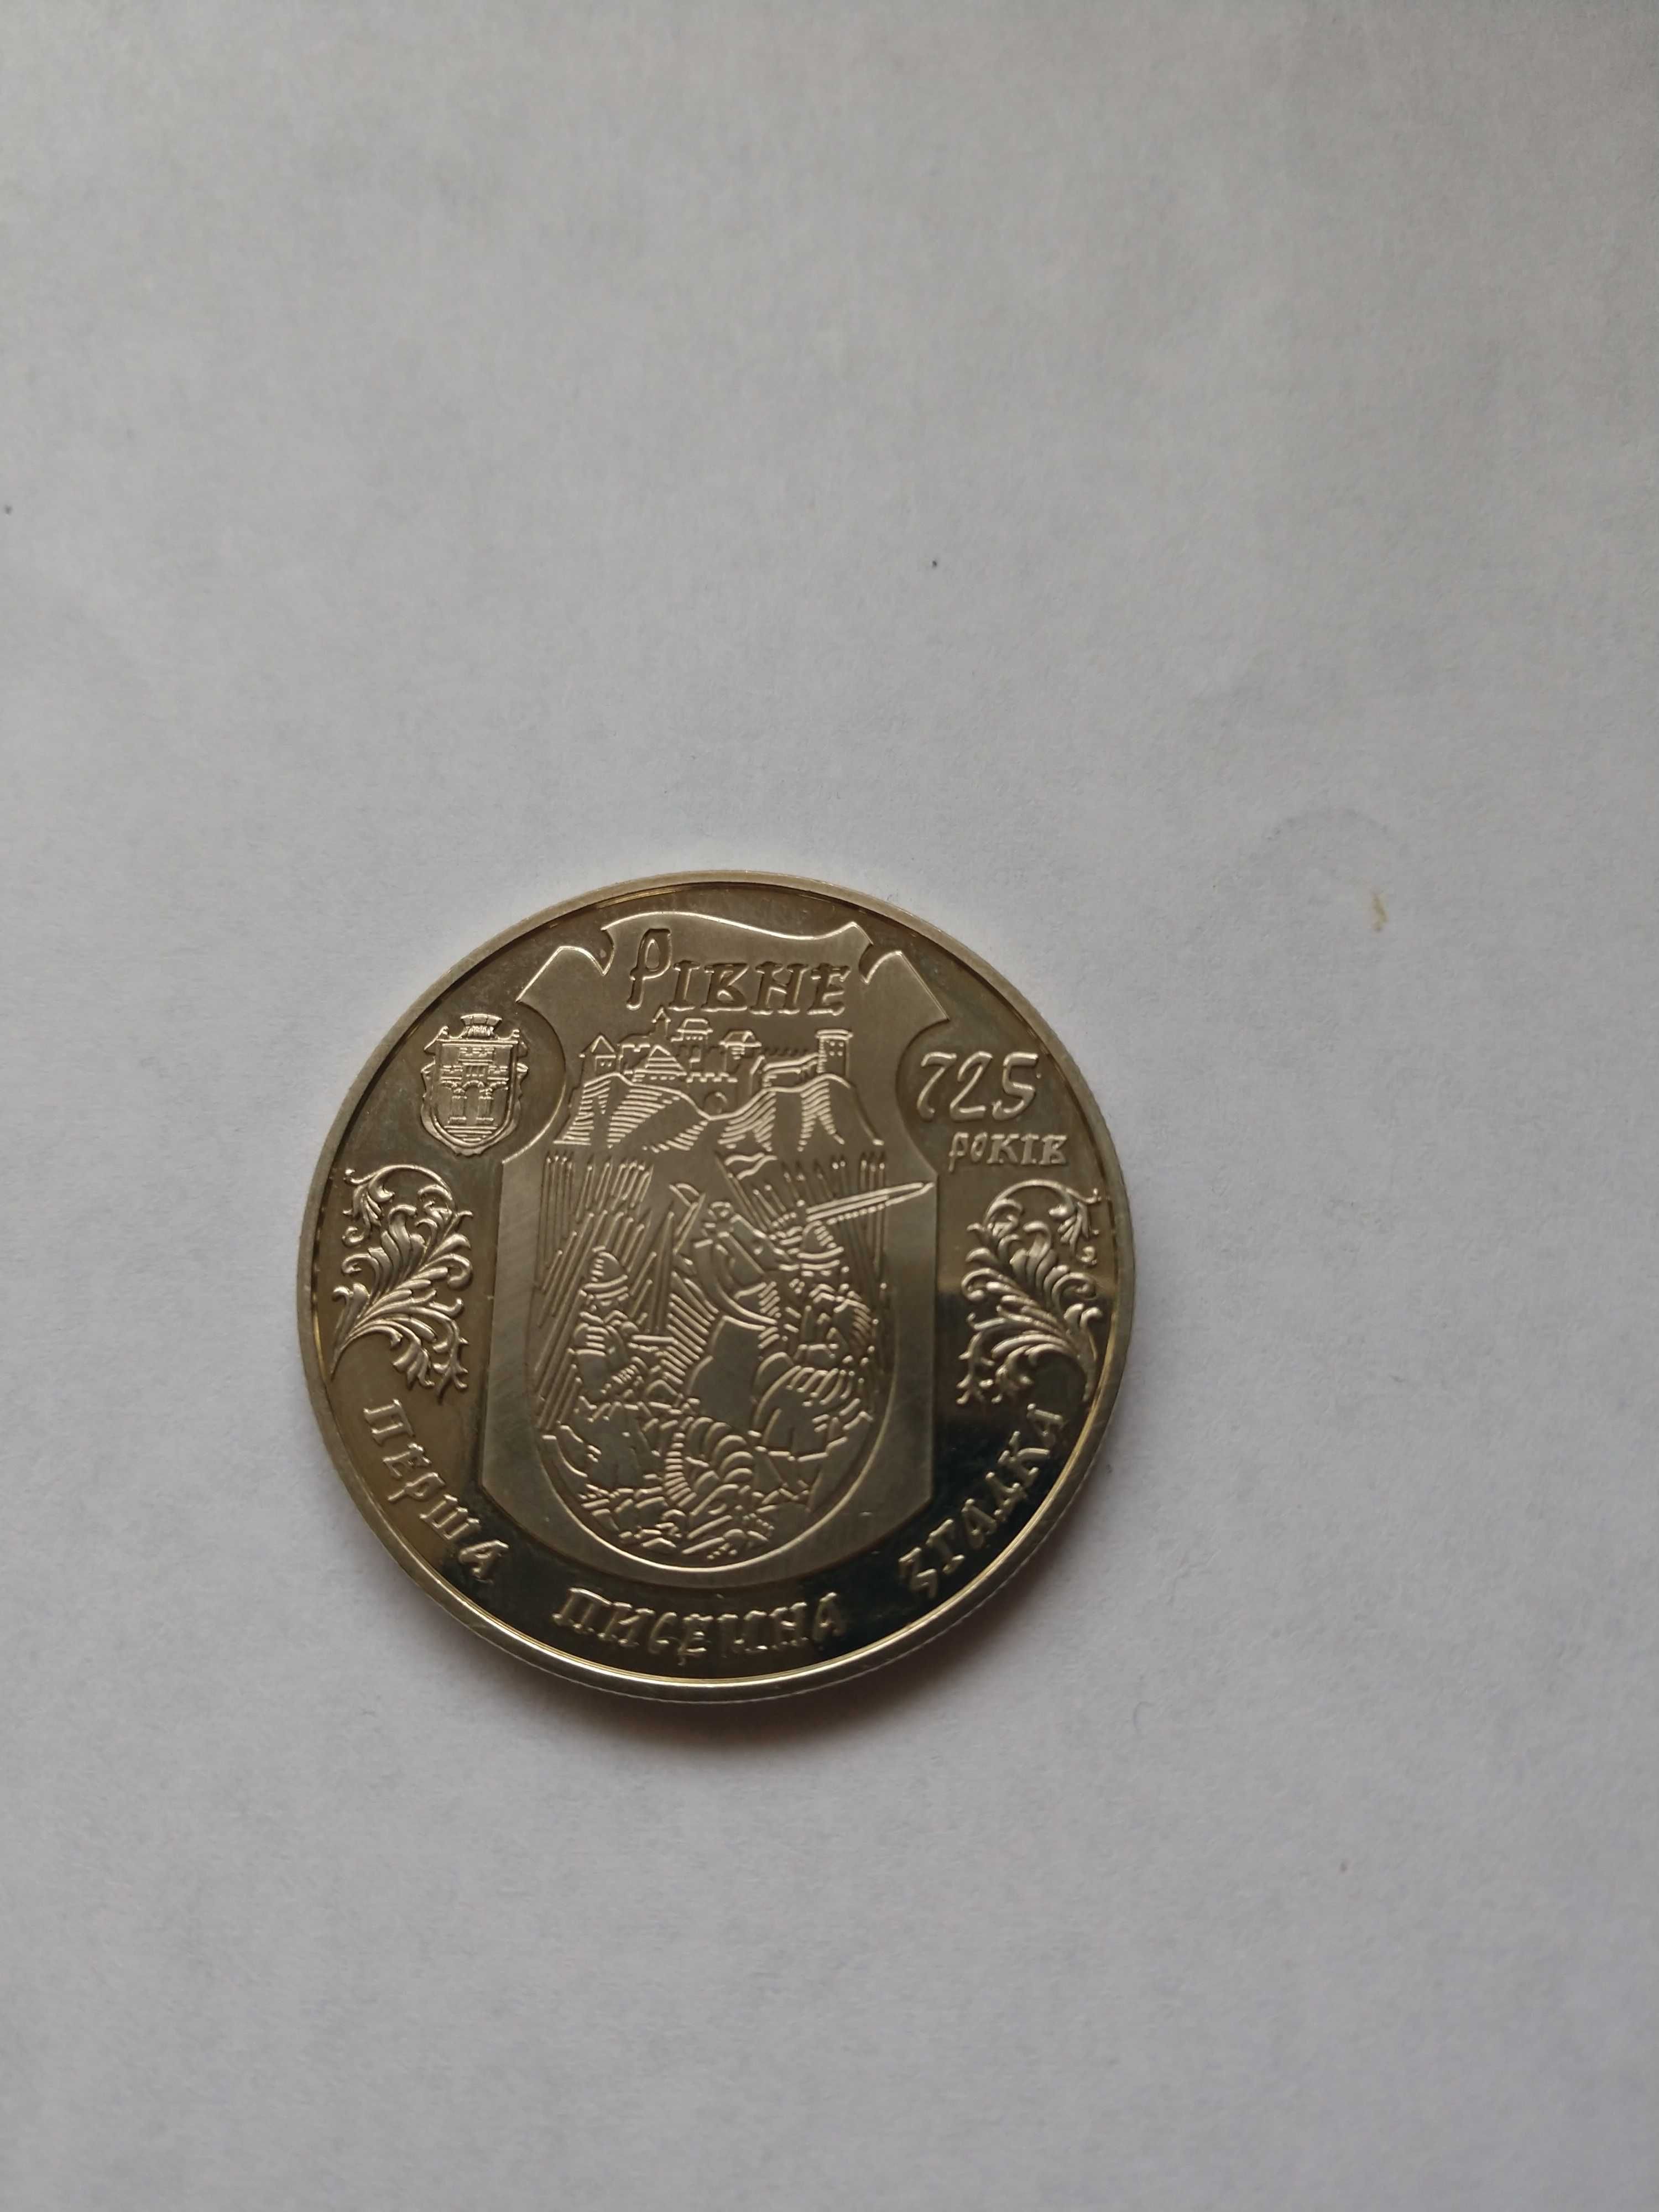 Ювілейна монета "Рівне '725 років" номіналом 5 грн.